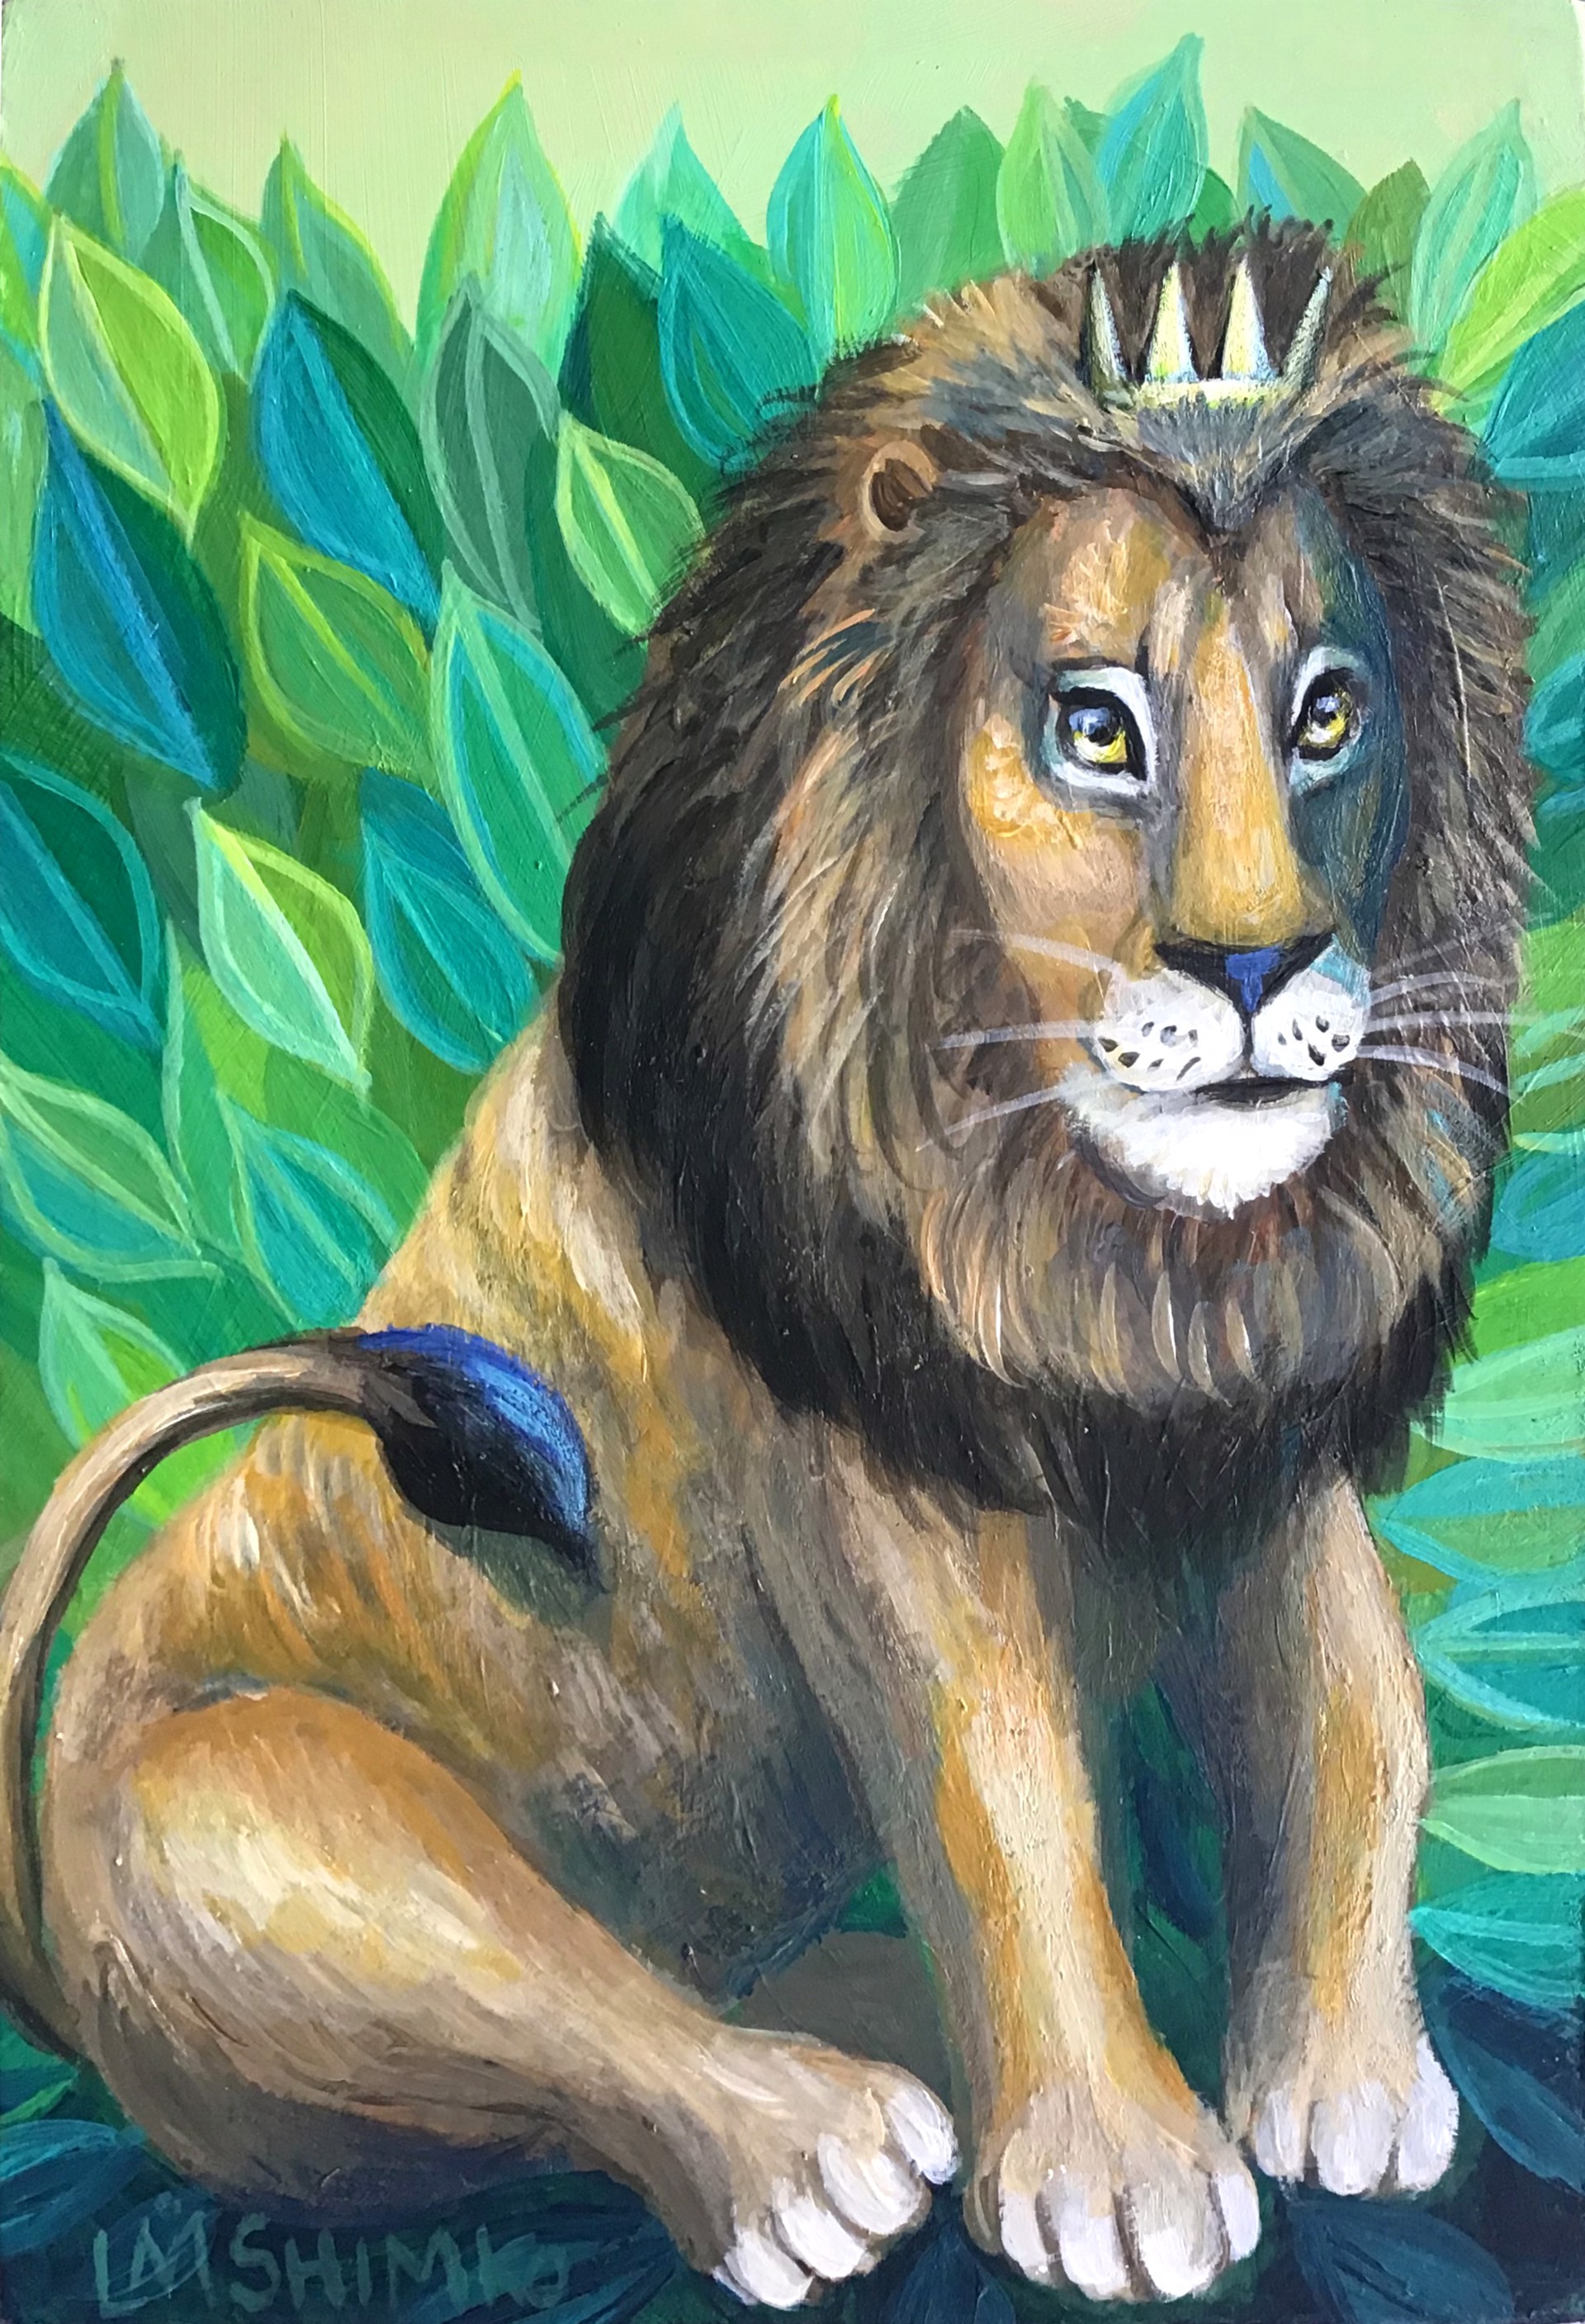 Royal Lion III by Lisa Shimko